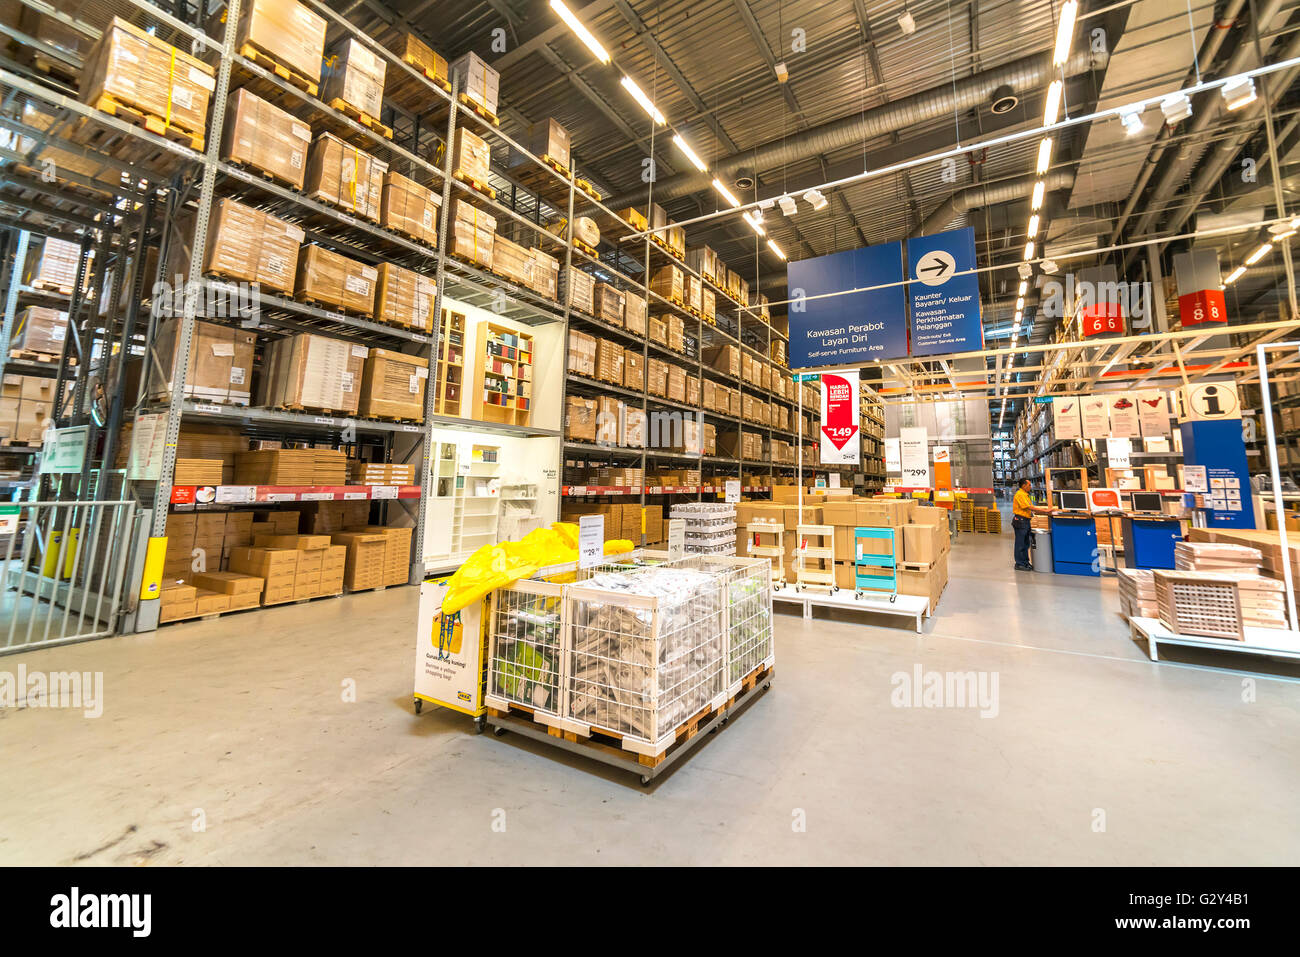 Warehouse ikea immagini e fotografie stock ad alta risoluzione - Alamy